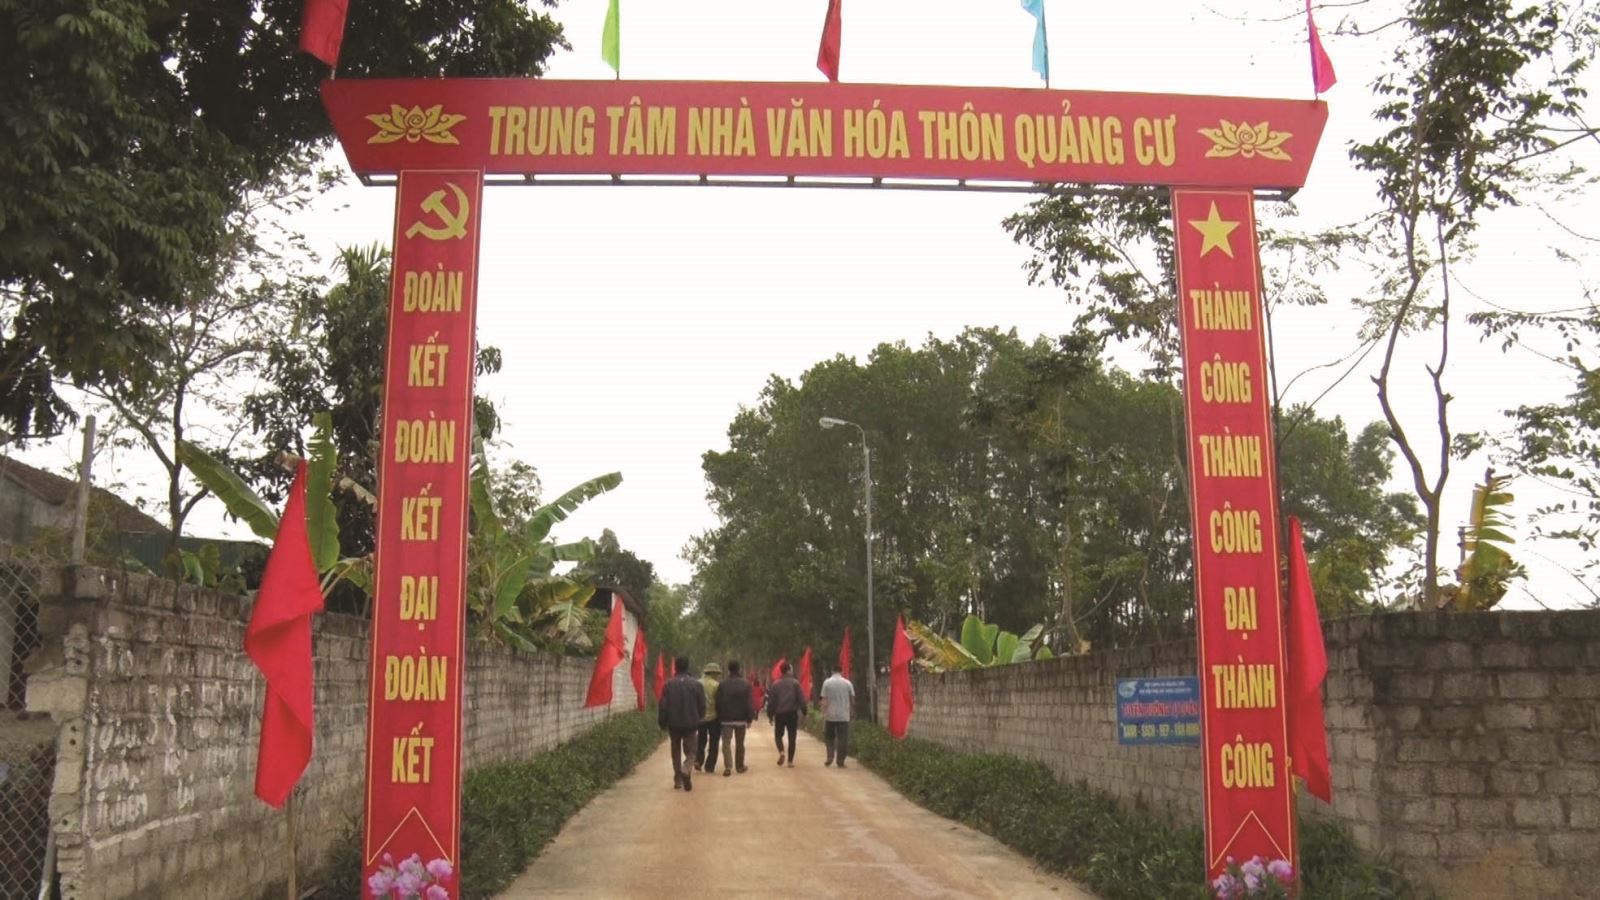 Quang Sơn nâng cao giá trị văn hóa  trong xây dựng Làng Văn hóa kiểu mẫu